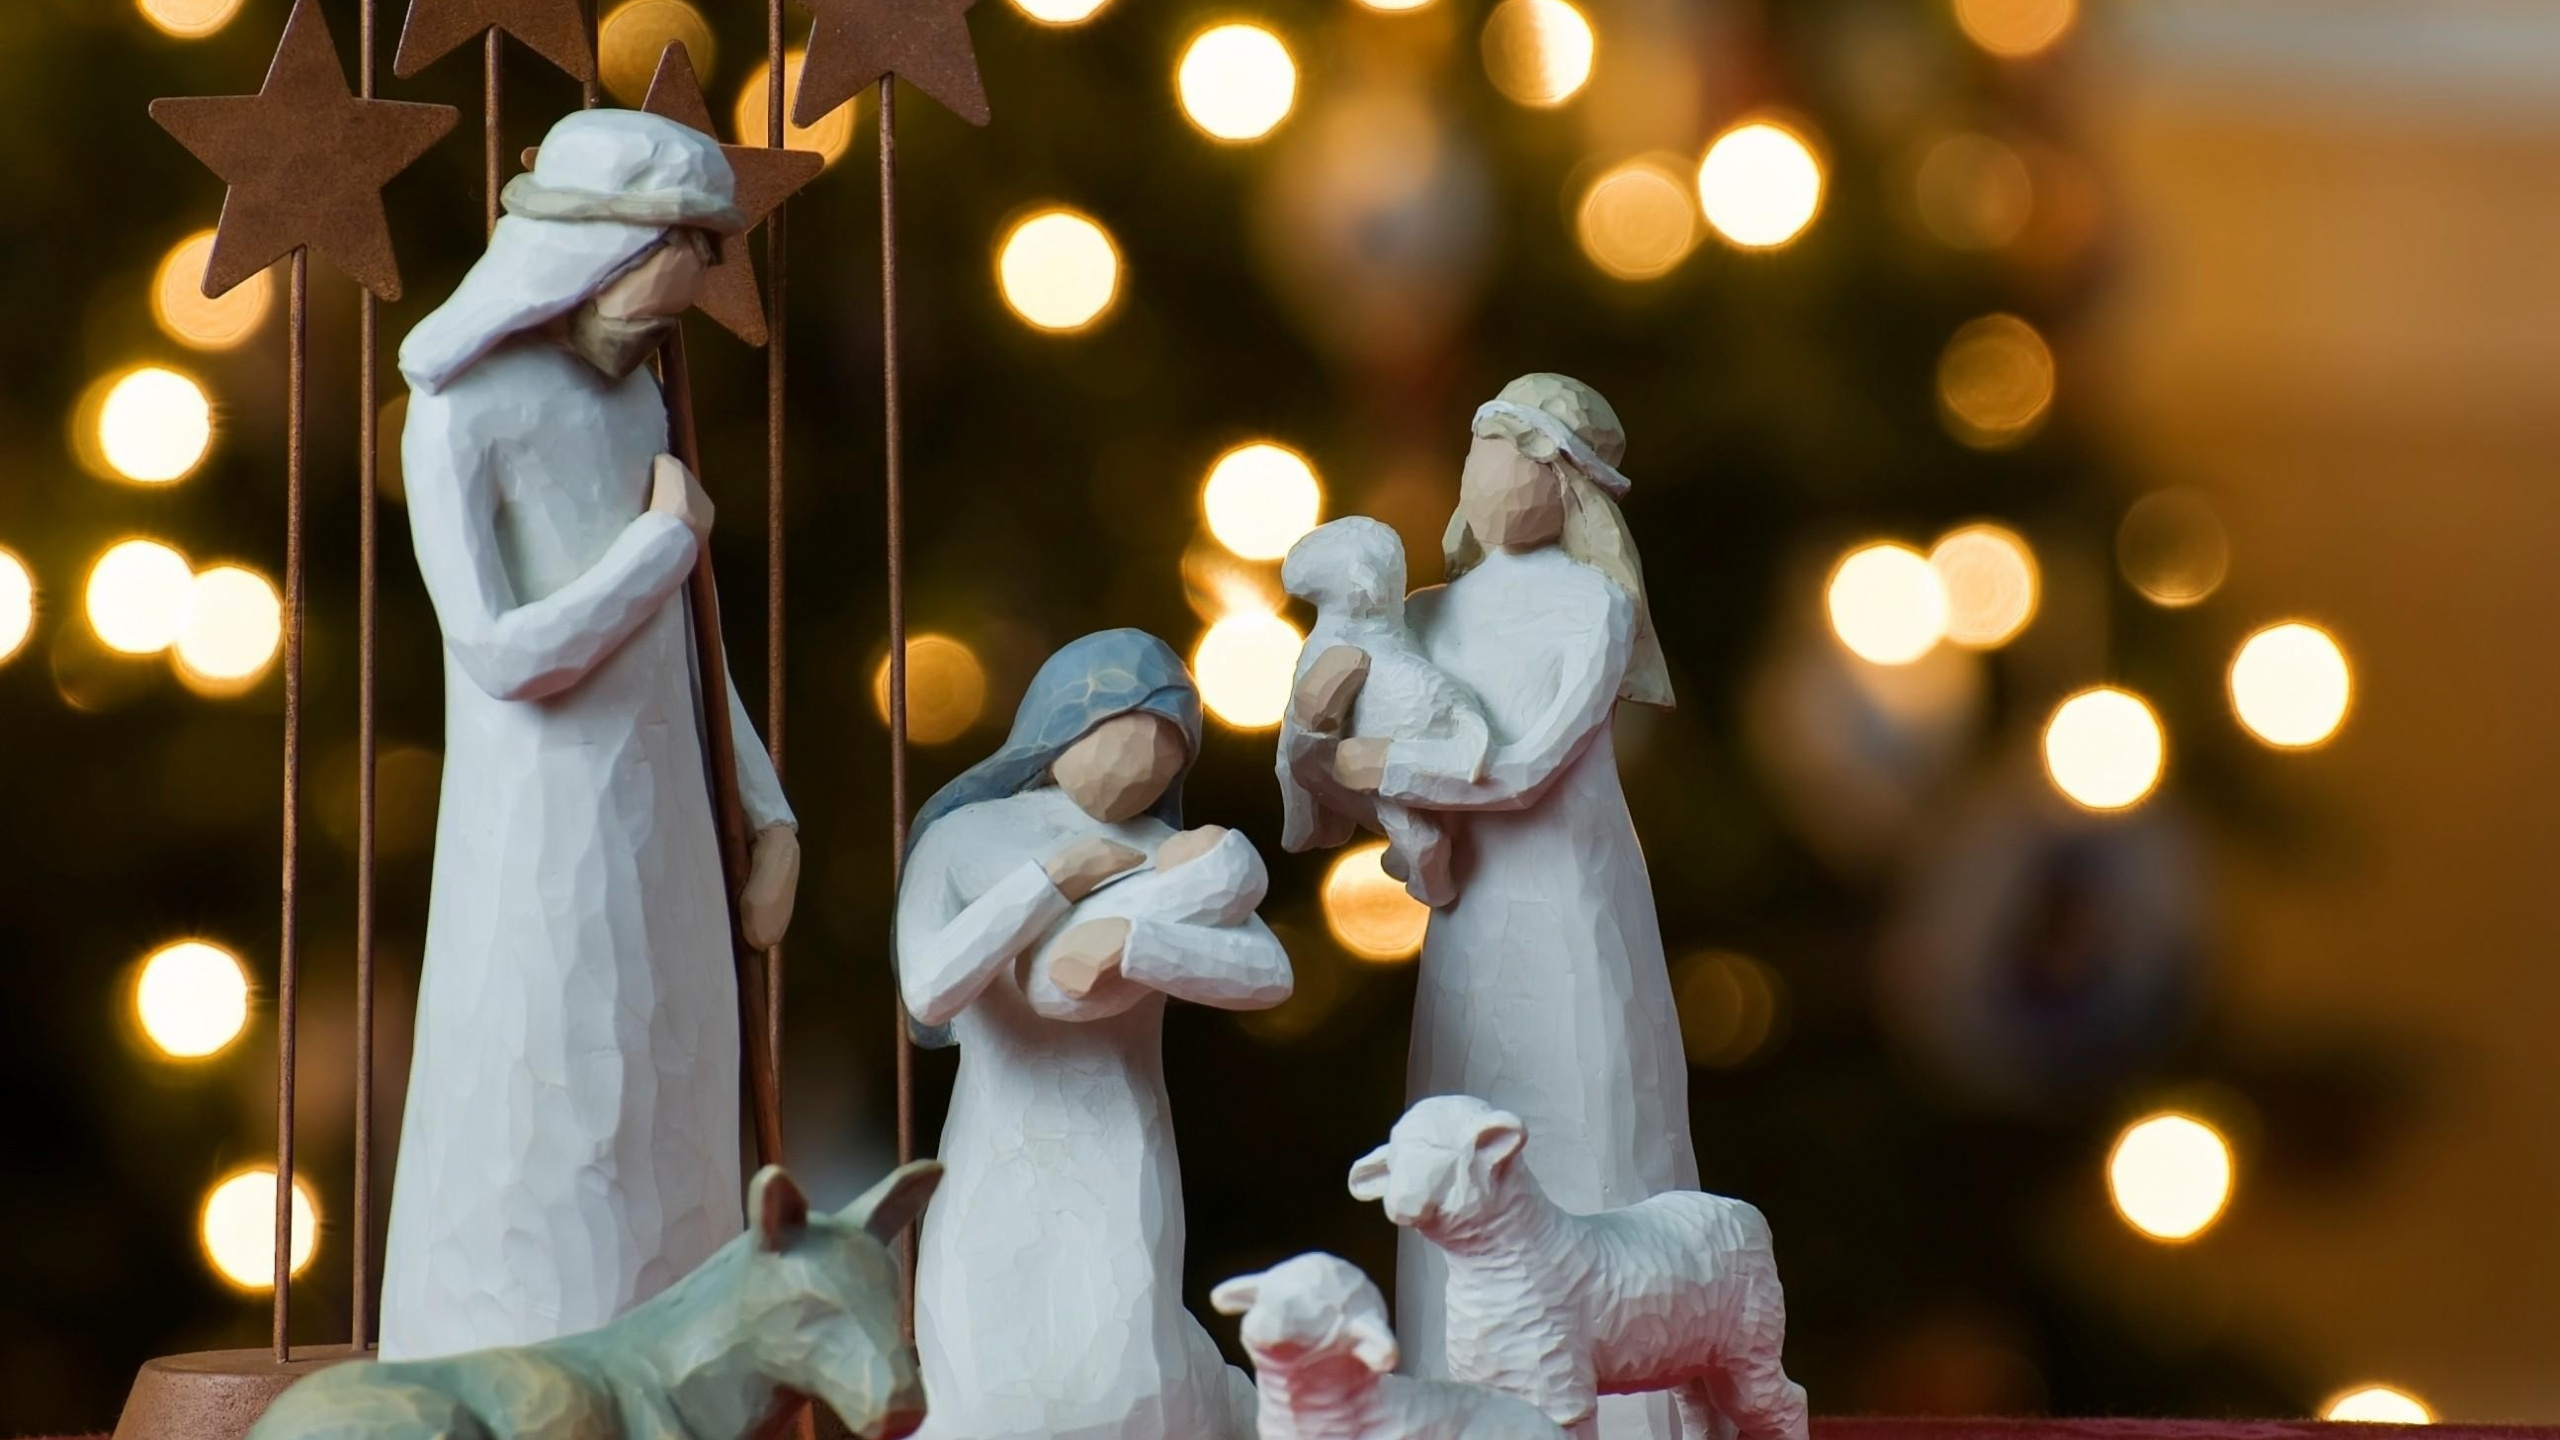 Natividad de Jesus, Escena de la Natividad, Decoración de la Navidad, Navidad, Tradición. Wallpaper in 2560x1440 Resolution